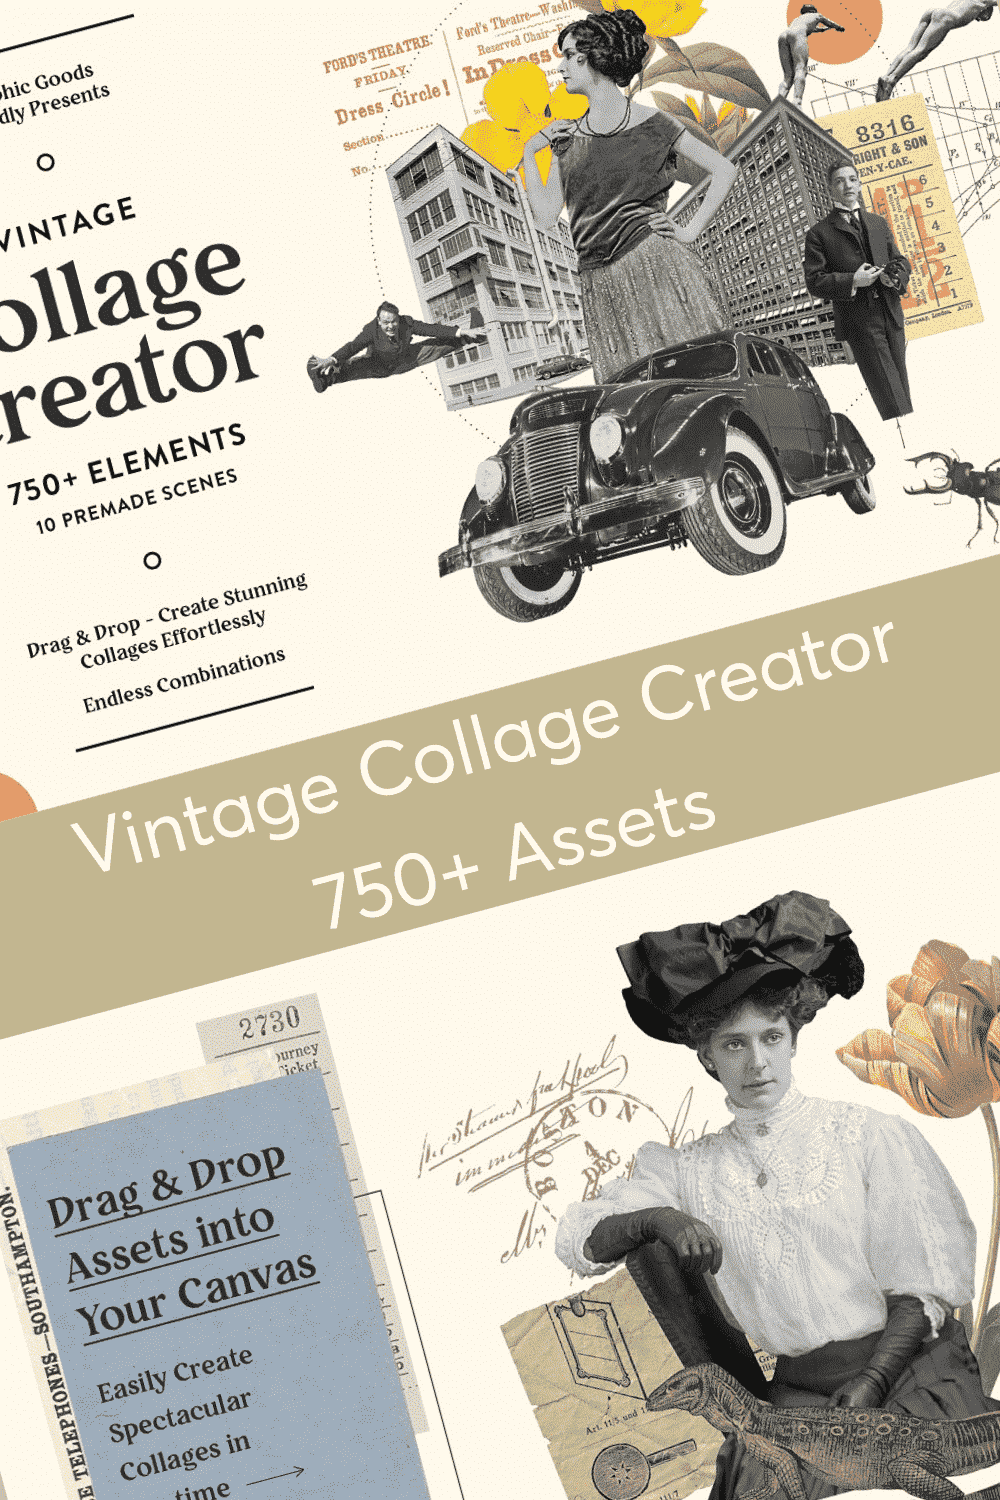 Vintage Collage Creator 750+ Assets - Drag & Drop - Create Stunning Collages Effortlessly.